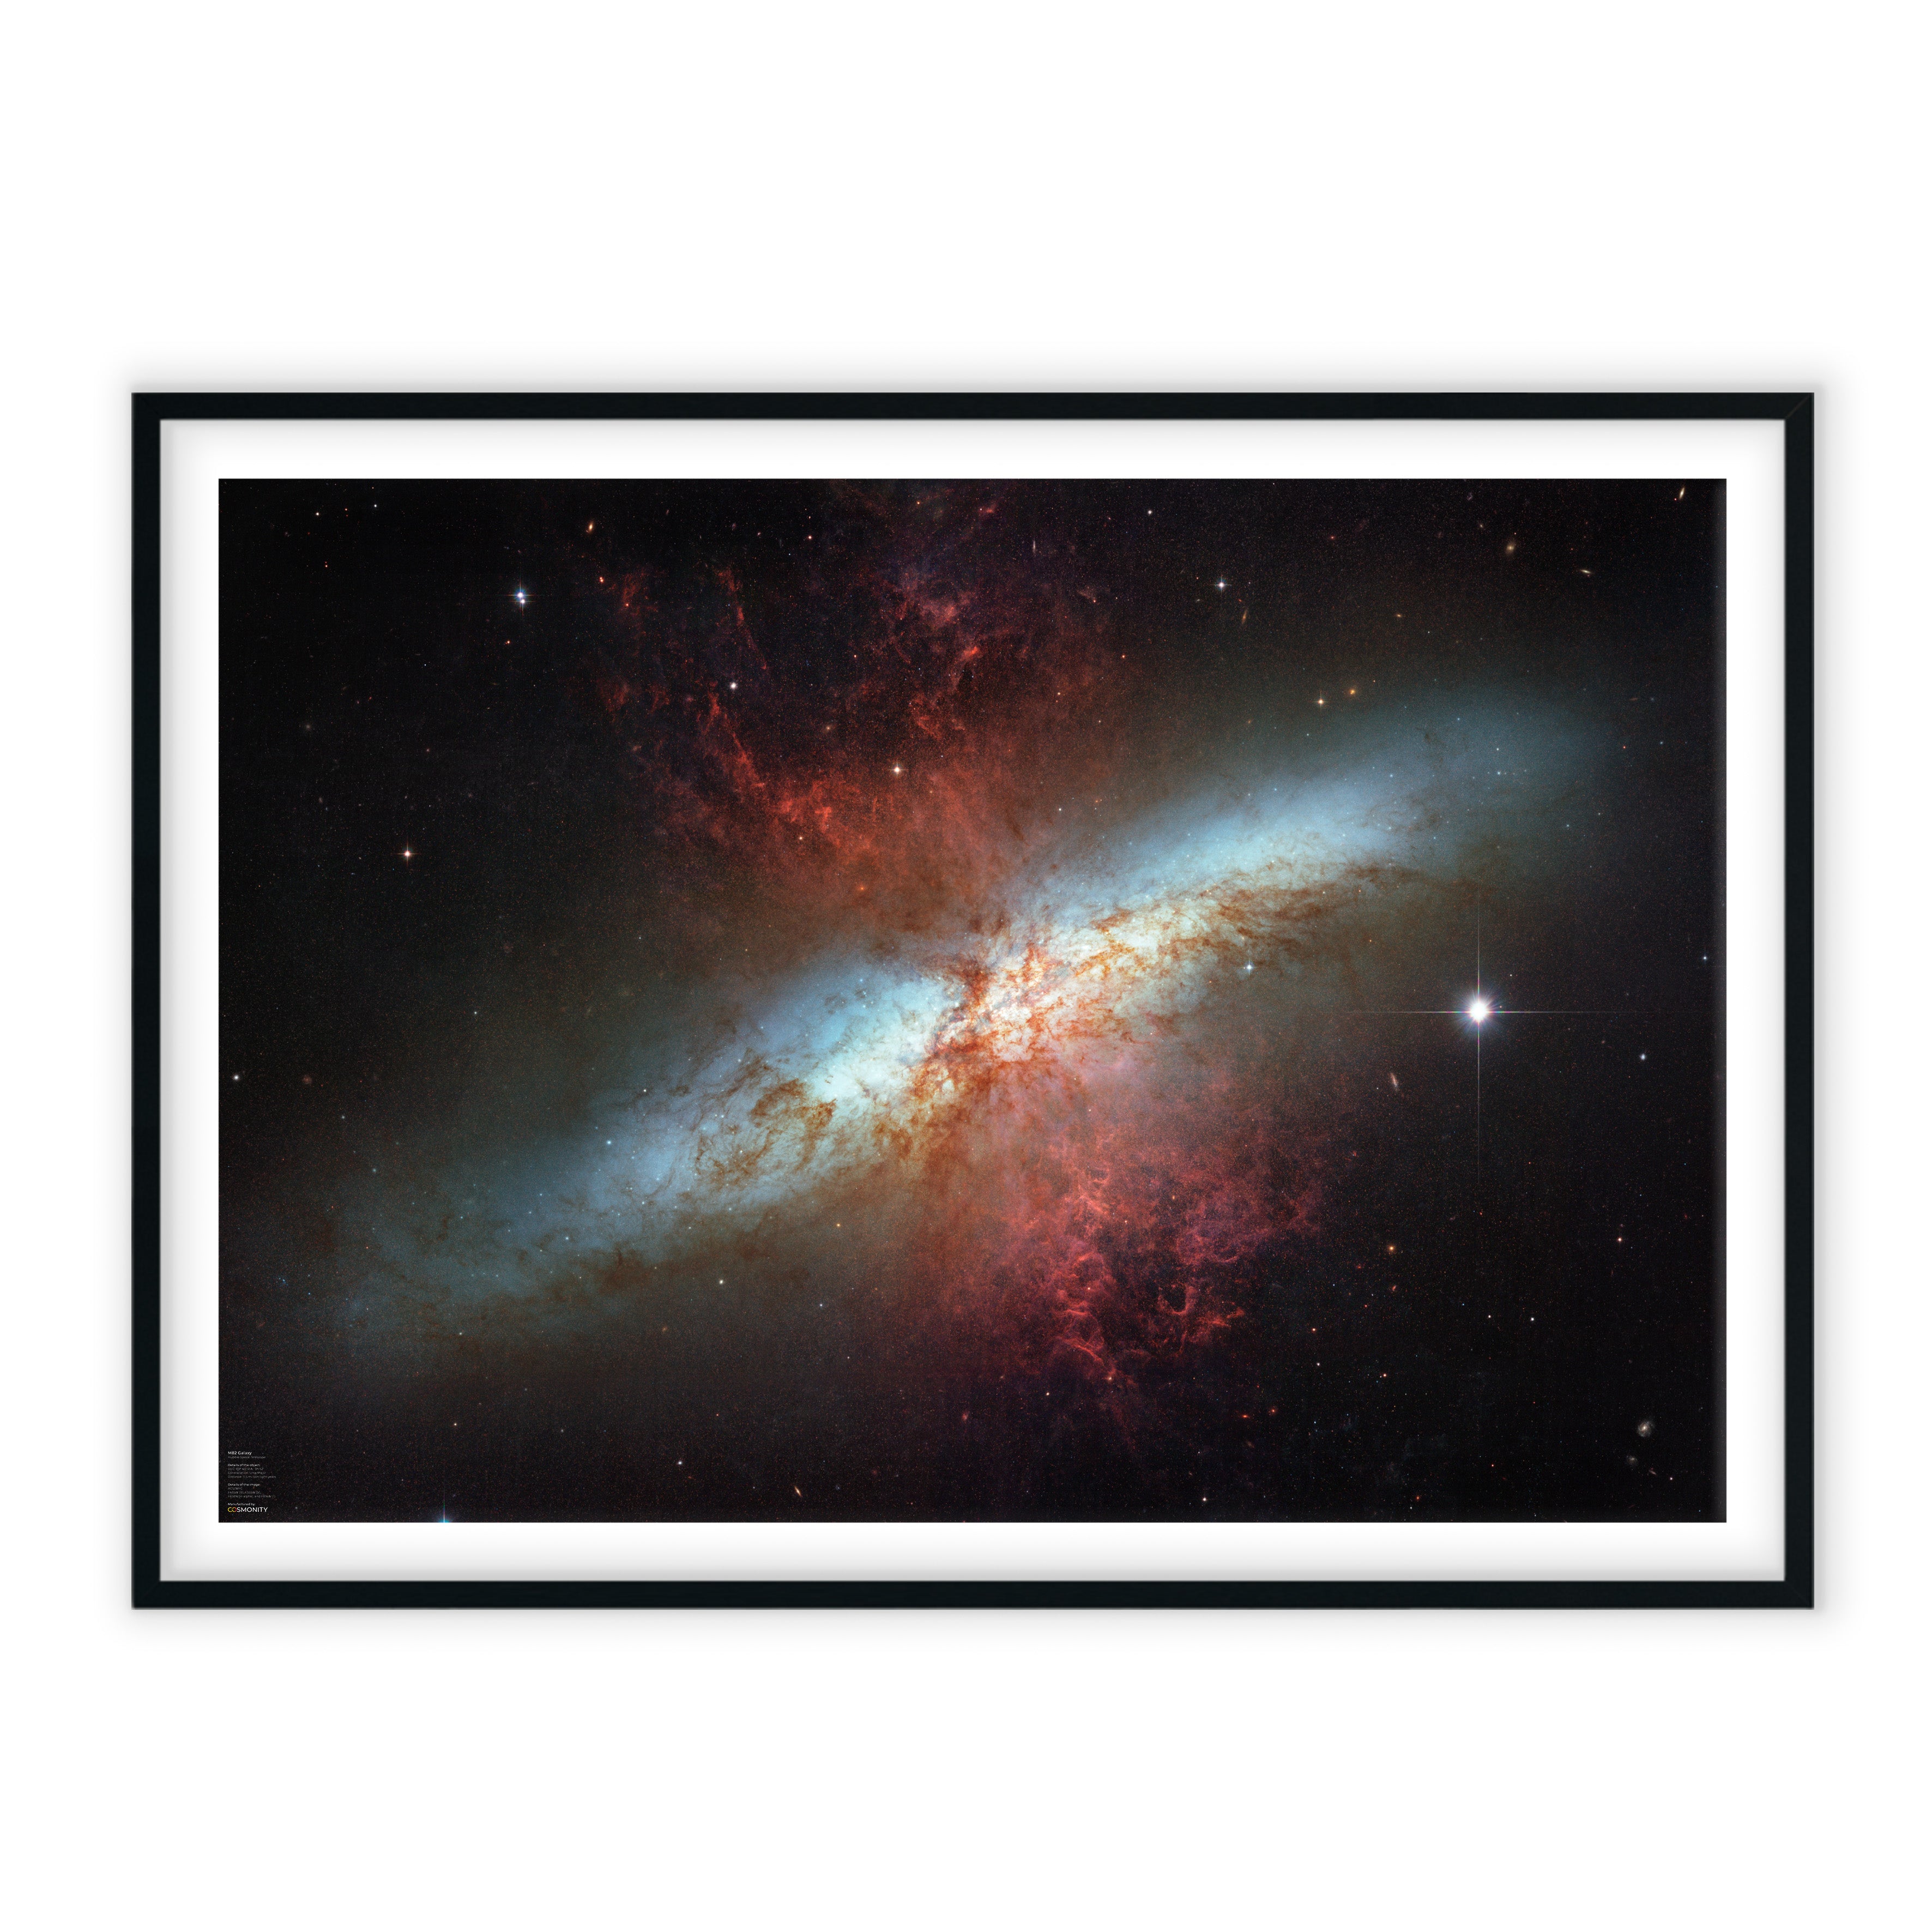 Cigar Galaxy - Messier 82